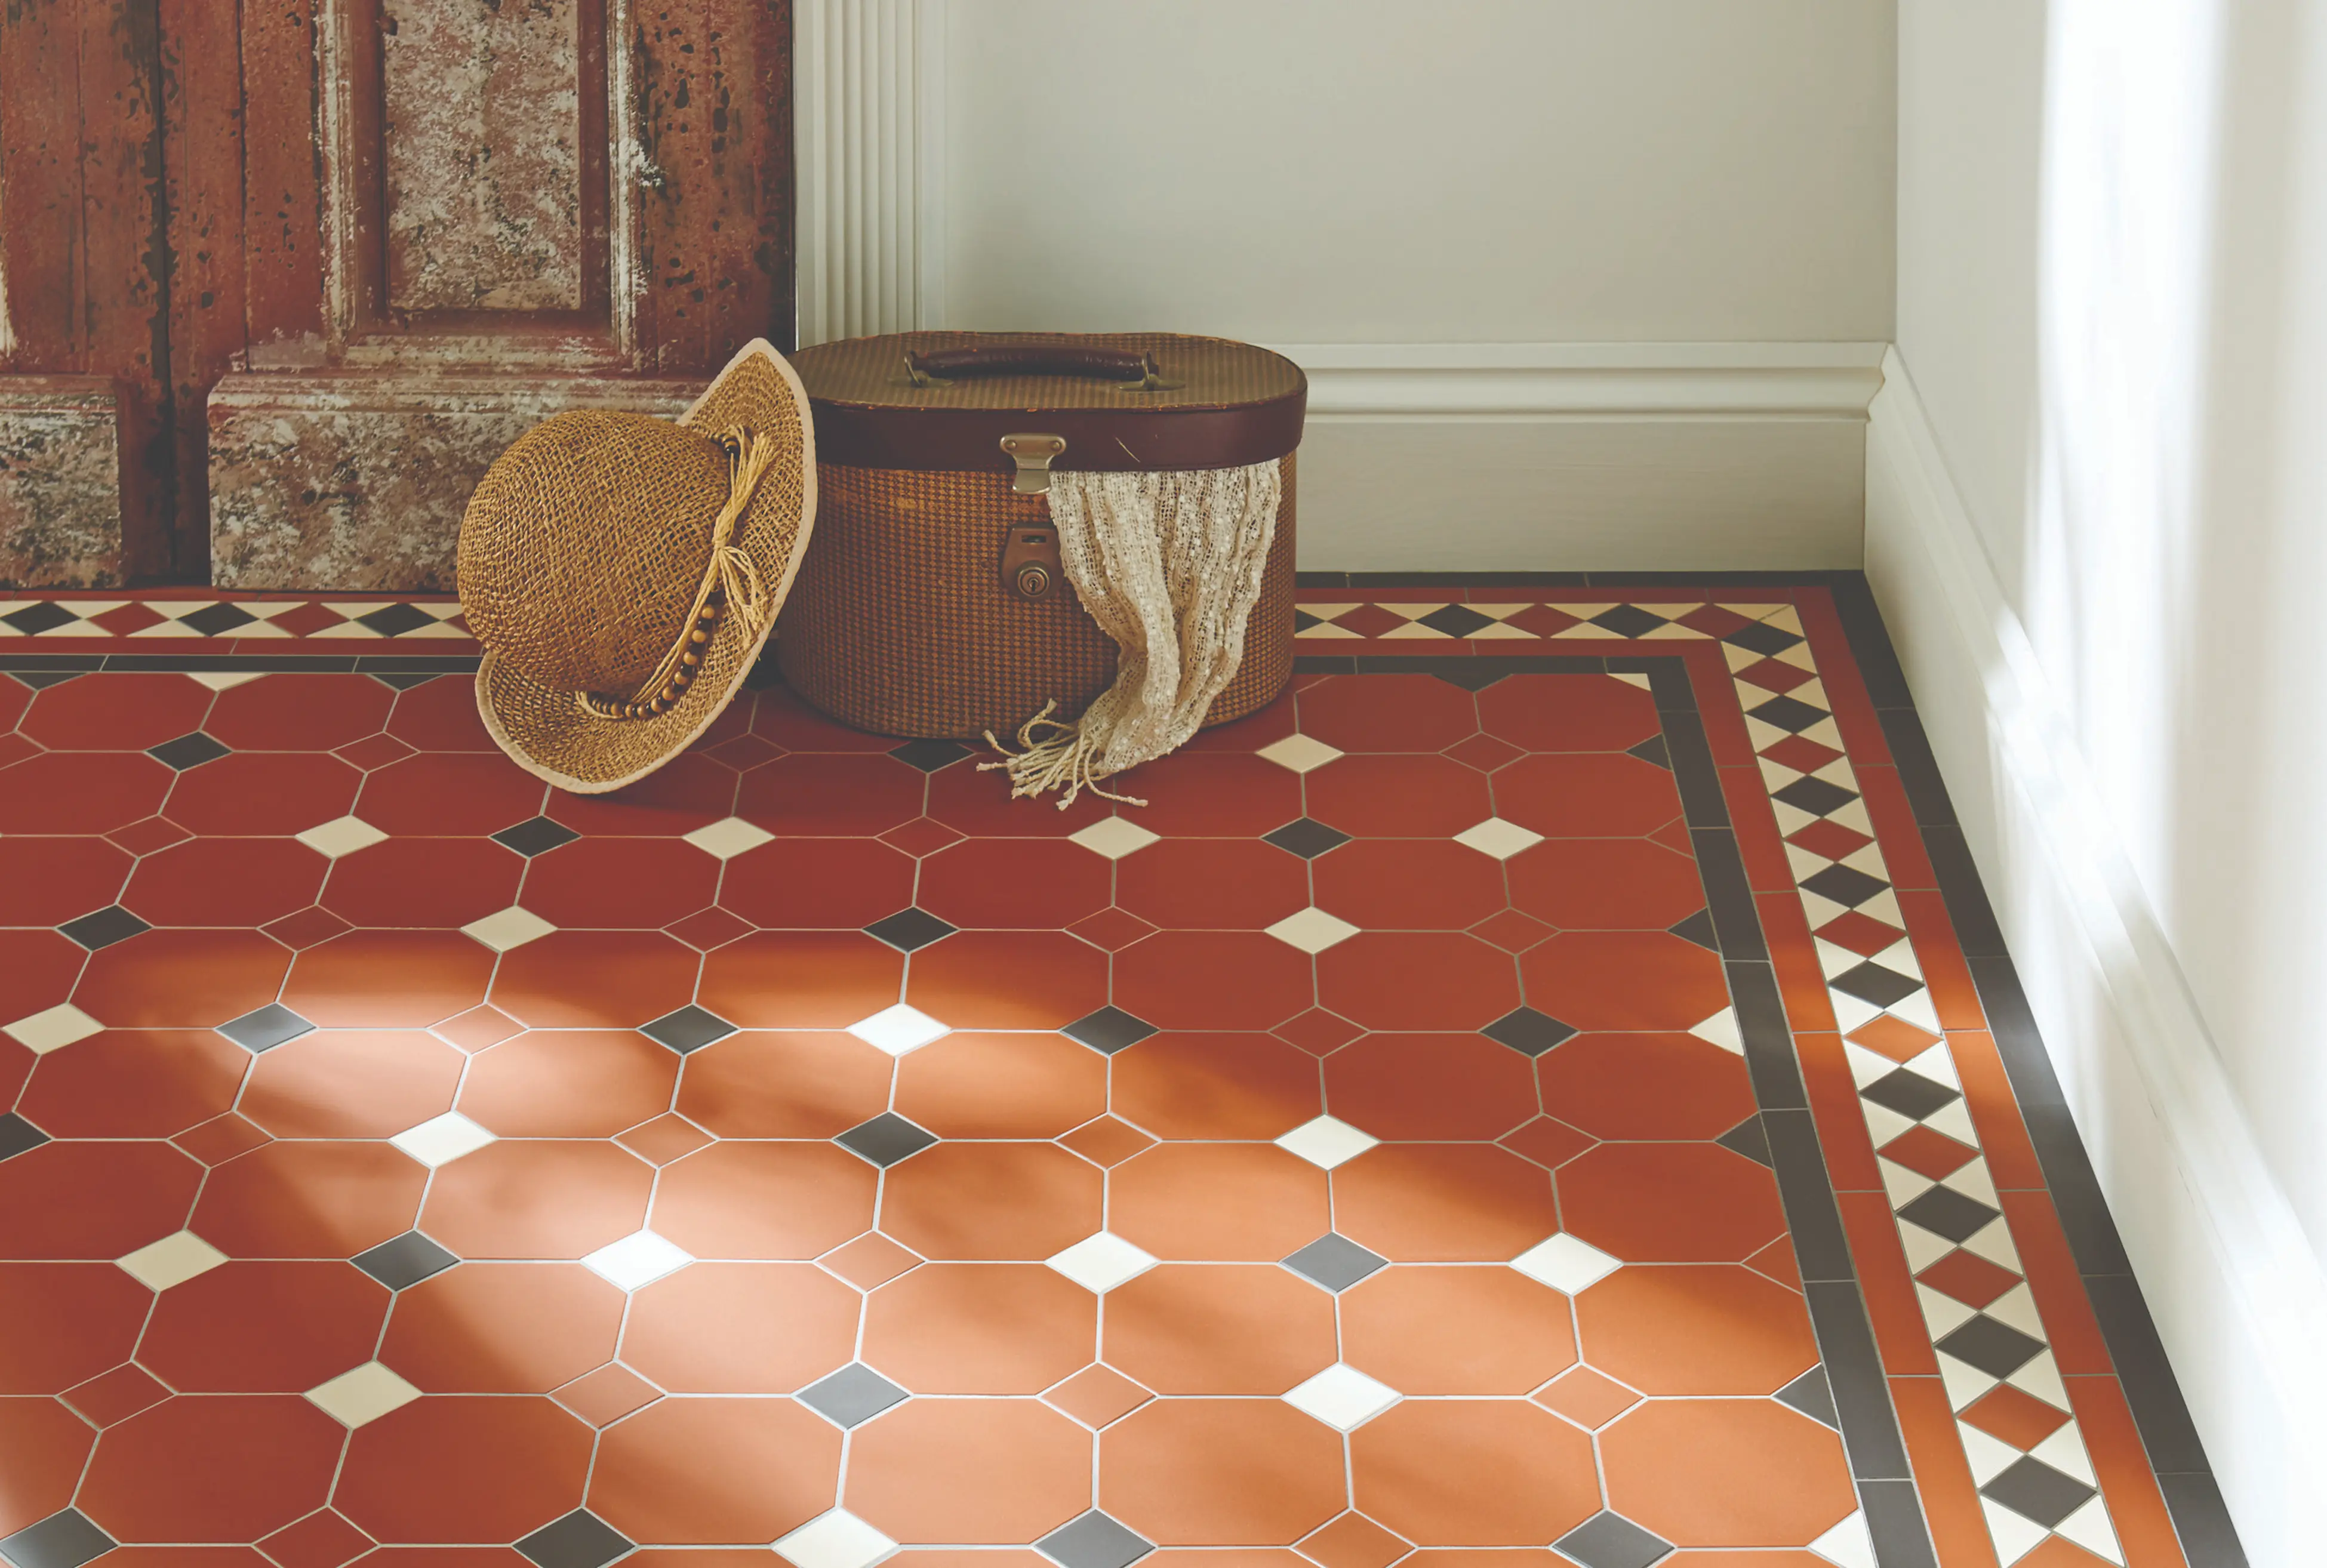 Skab tidløs elegance med vores victorianske gulv fliser. Opdag en subtil kombination af historisk charme og moderne komfort under dine fødder for en stilsikker indretning.